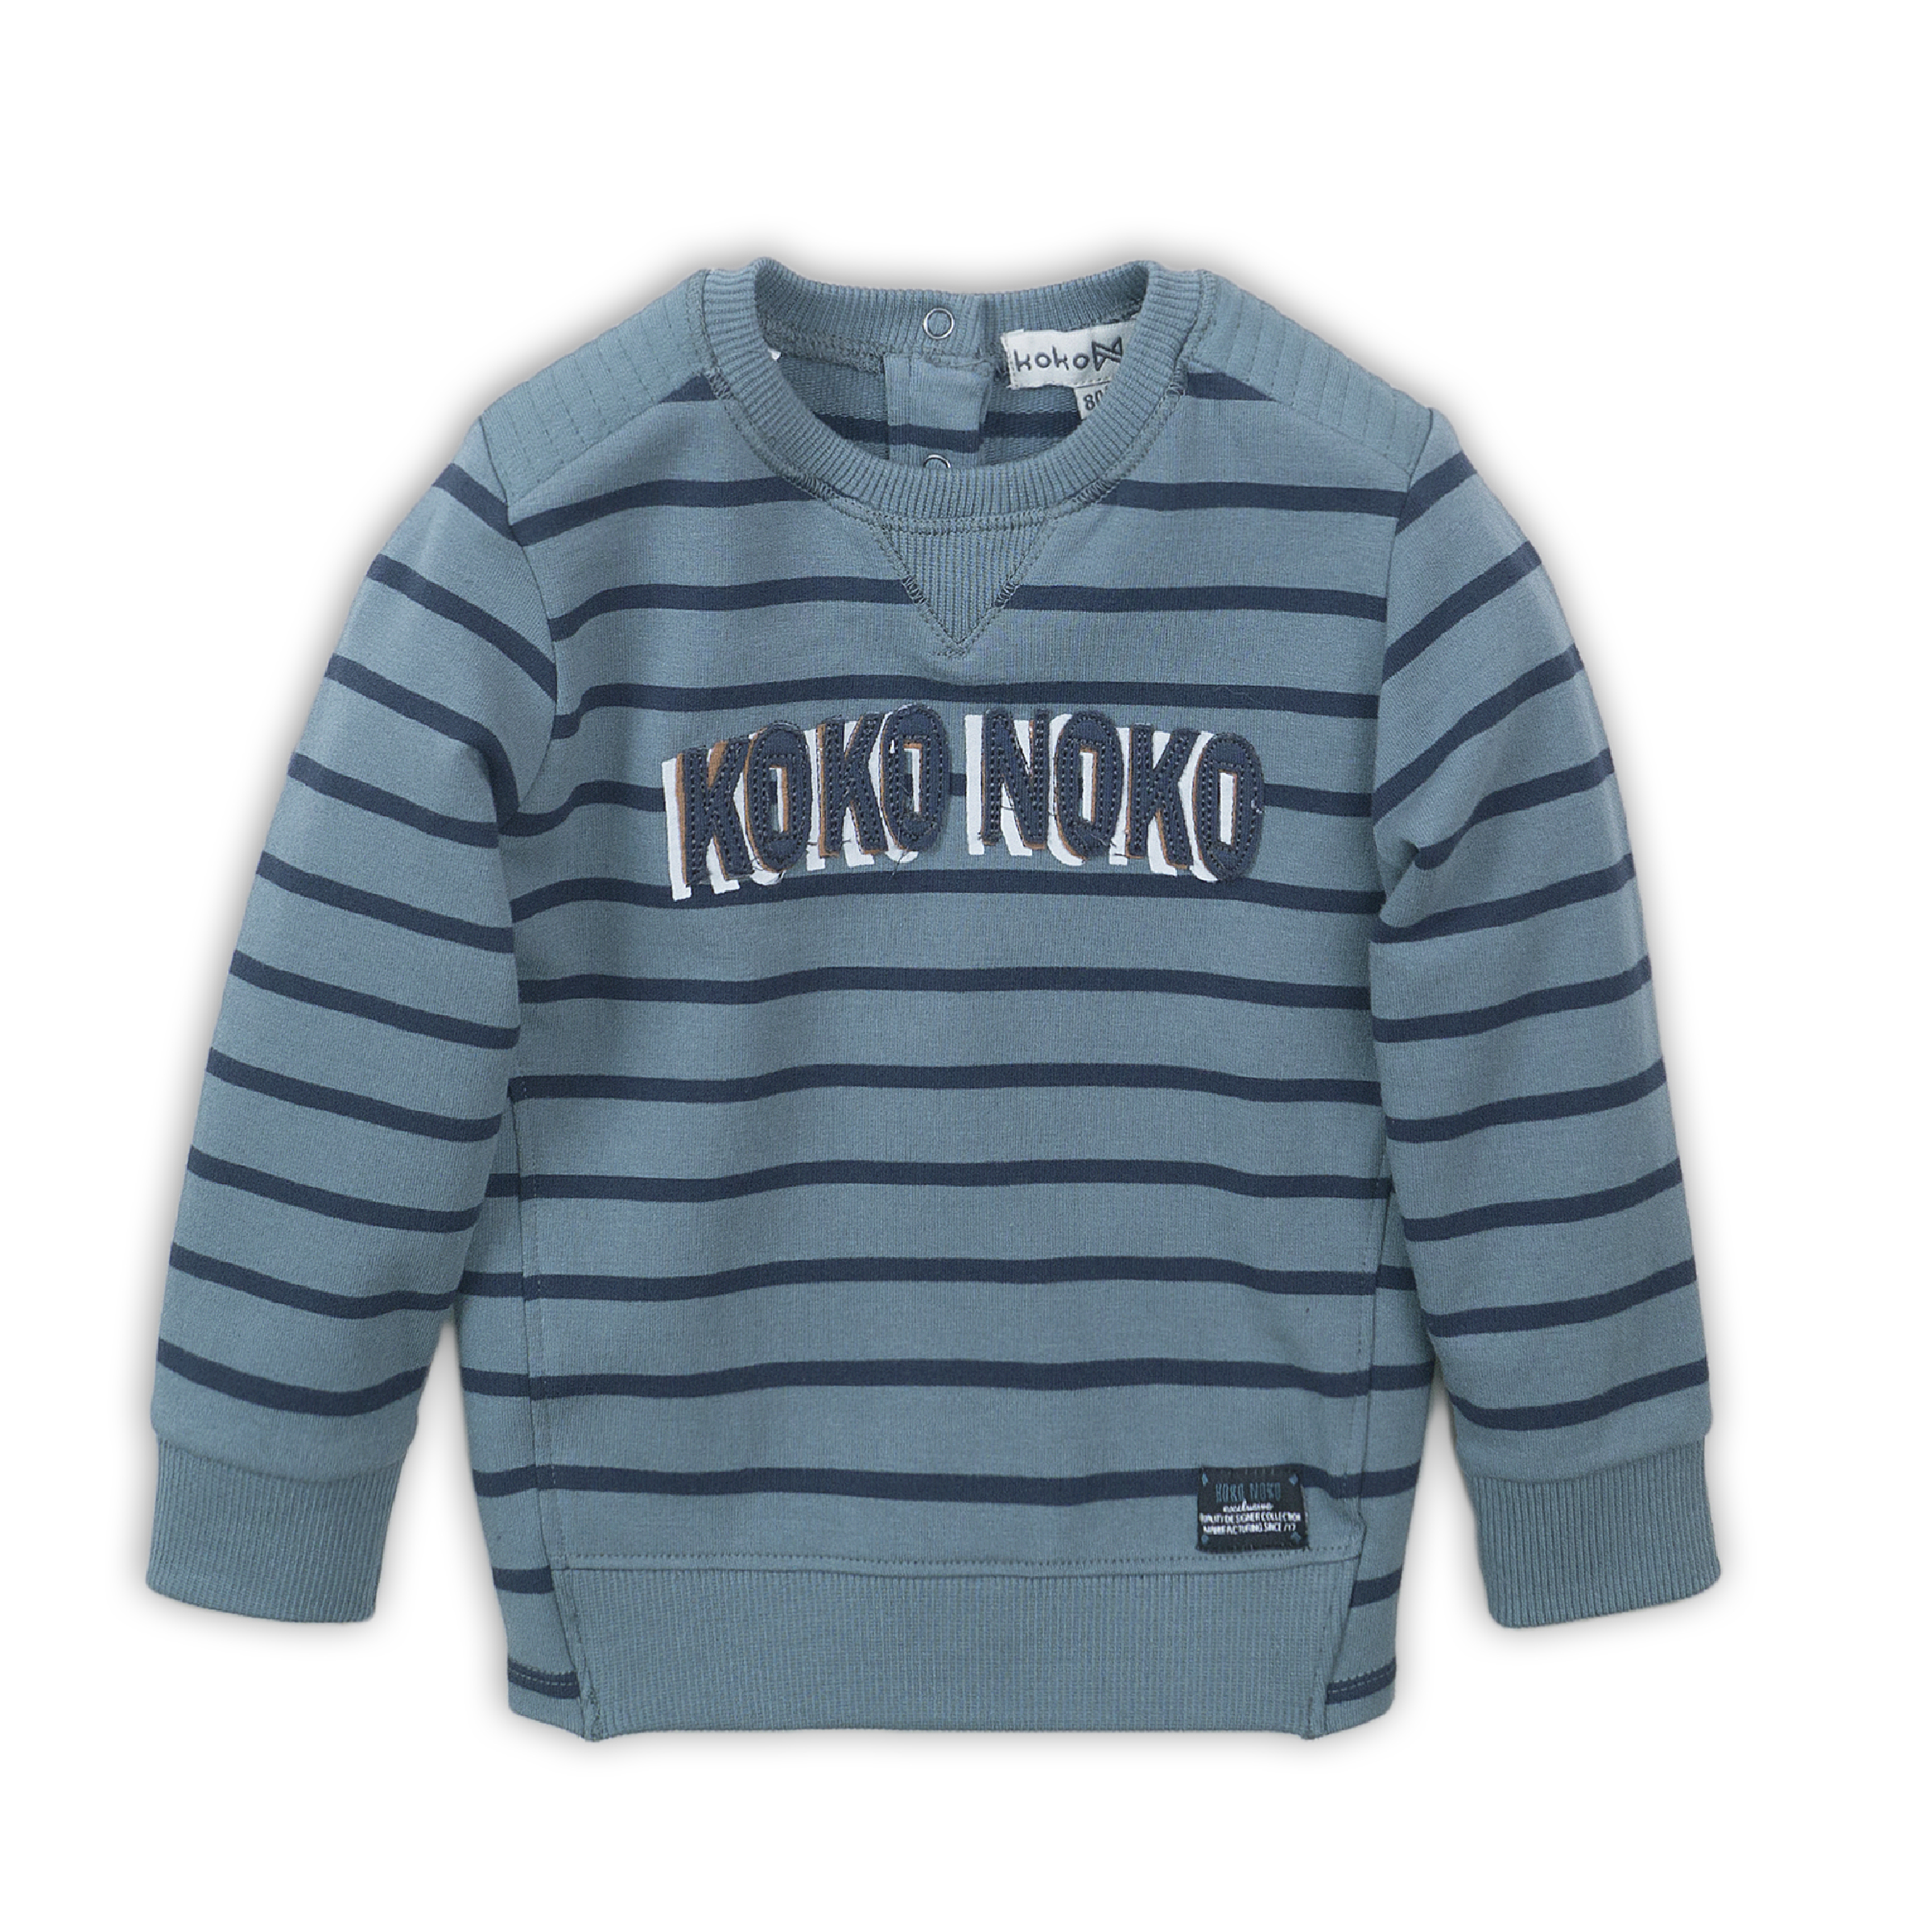 Jongens Sweater van Koko Noko in de kleur  Teal green + navy in maat 86.